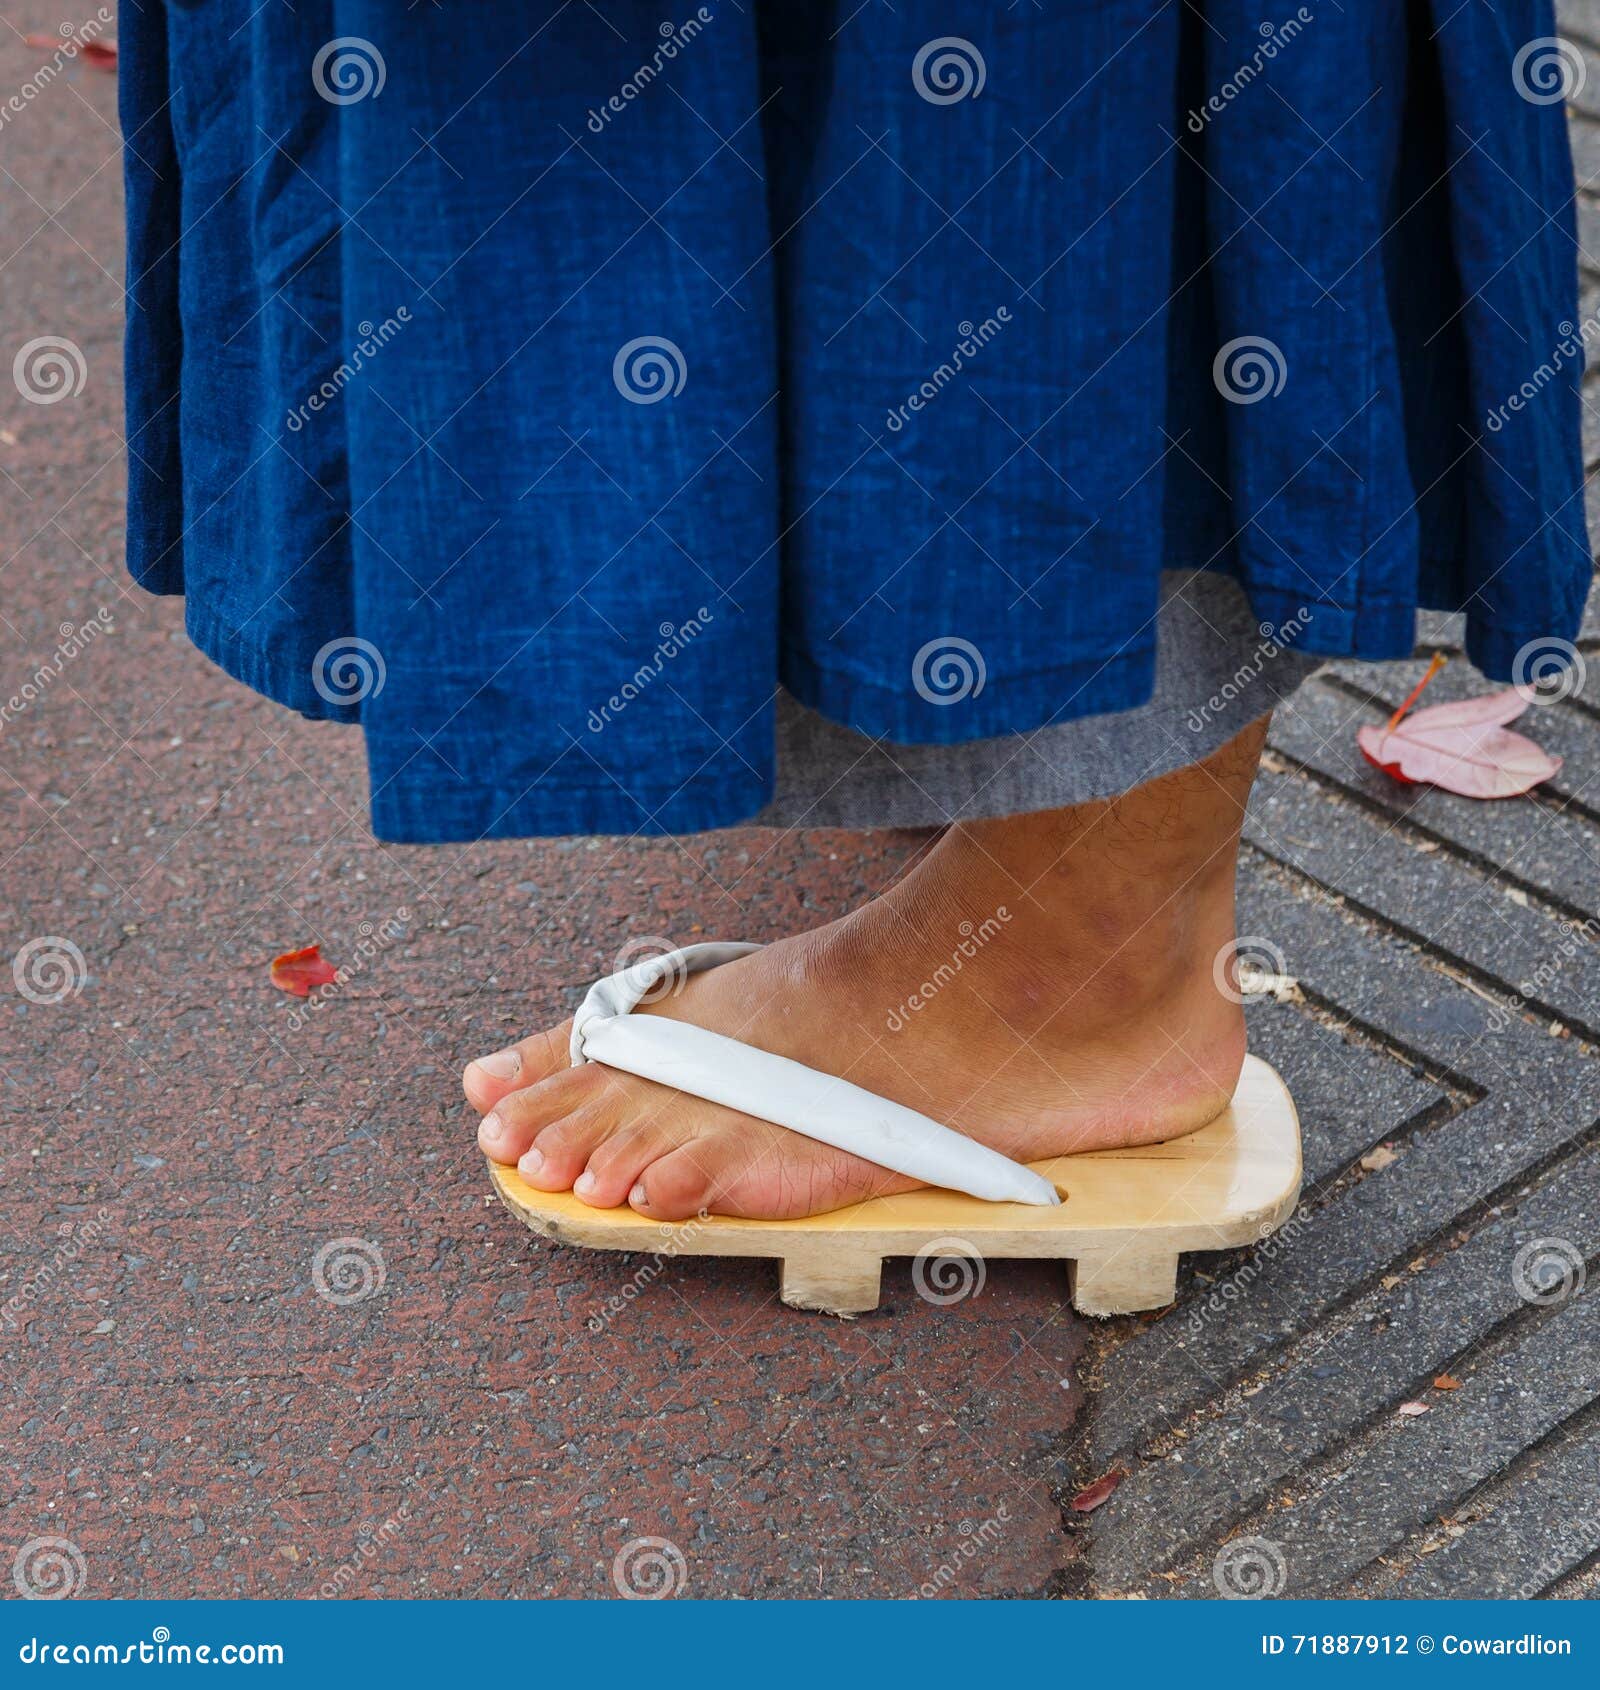 sandalias de monje